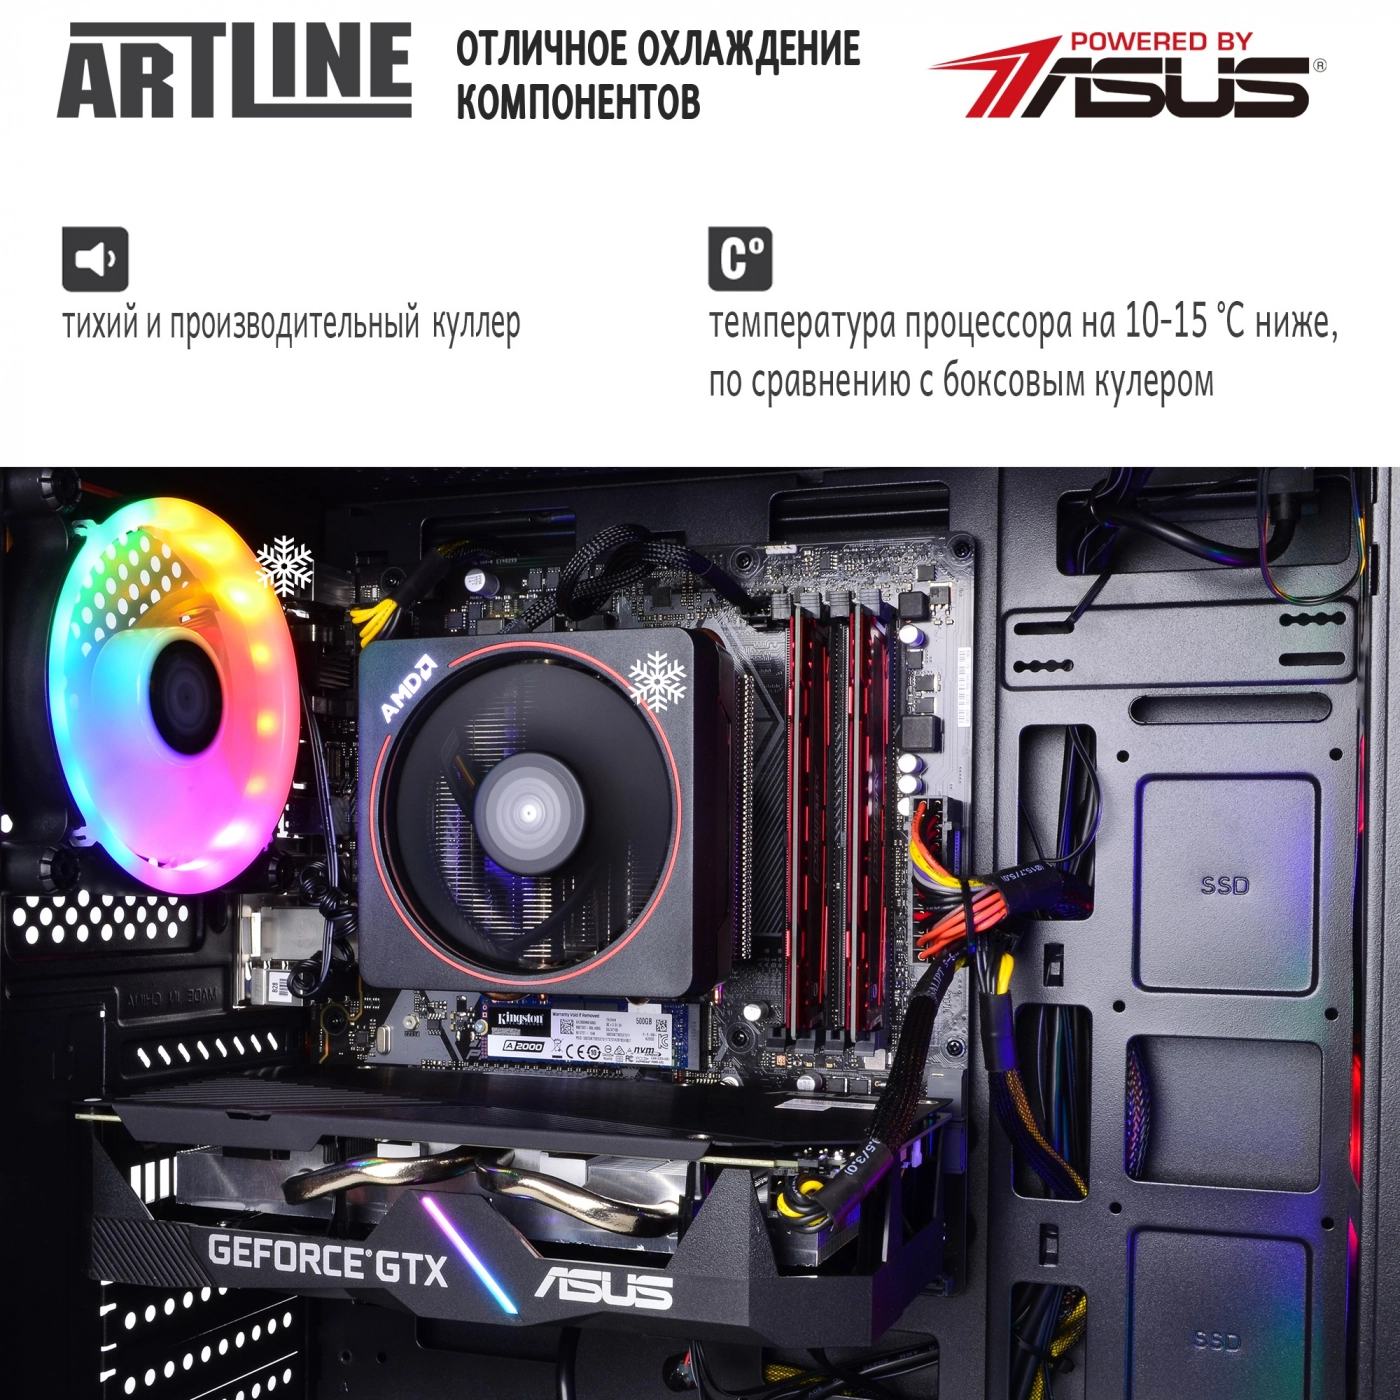 Купить Компьютер ARTLINE Gaming X45v17 - фото 7